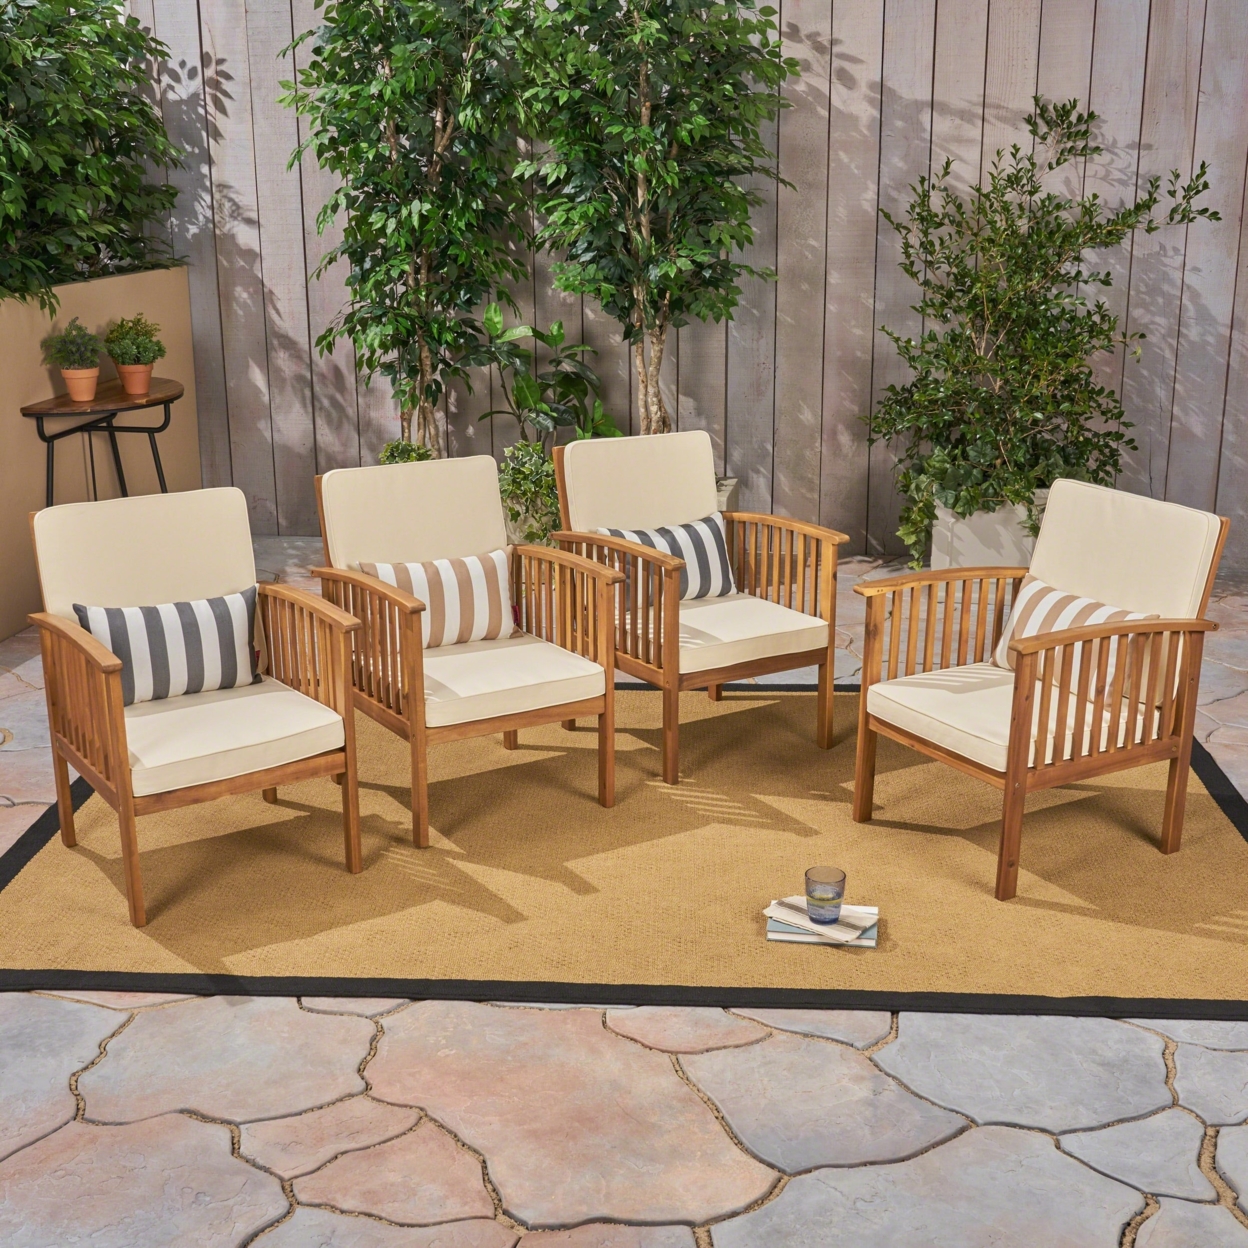 Ray Acacia Outdoor Acacia Wood Club Chairs With Cushions - Dark Teal, Brown Patina, Set Of 2